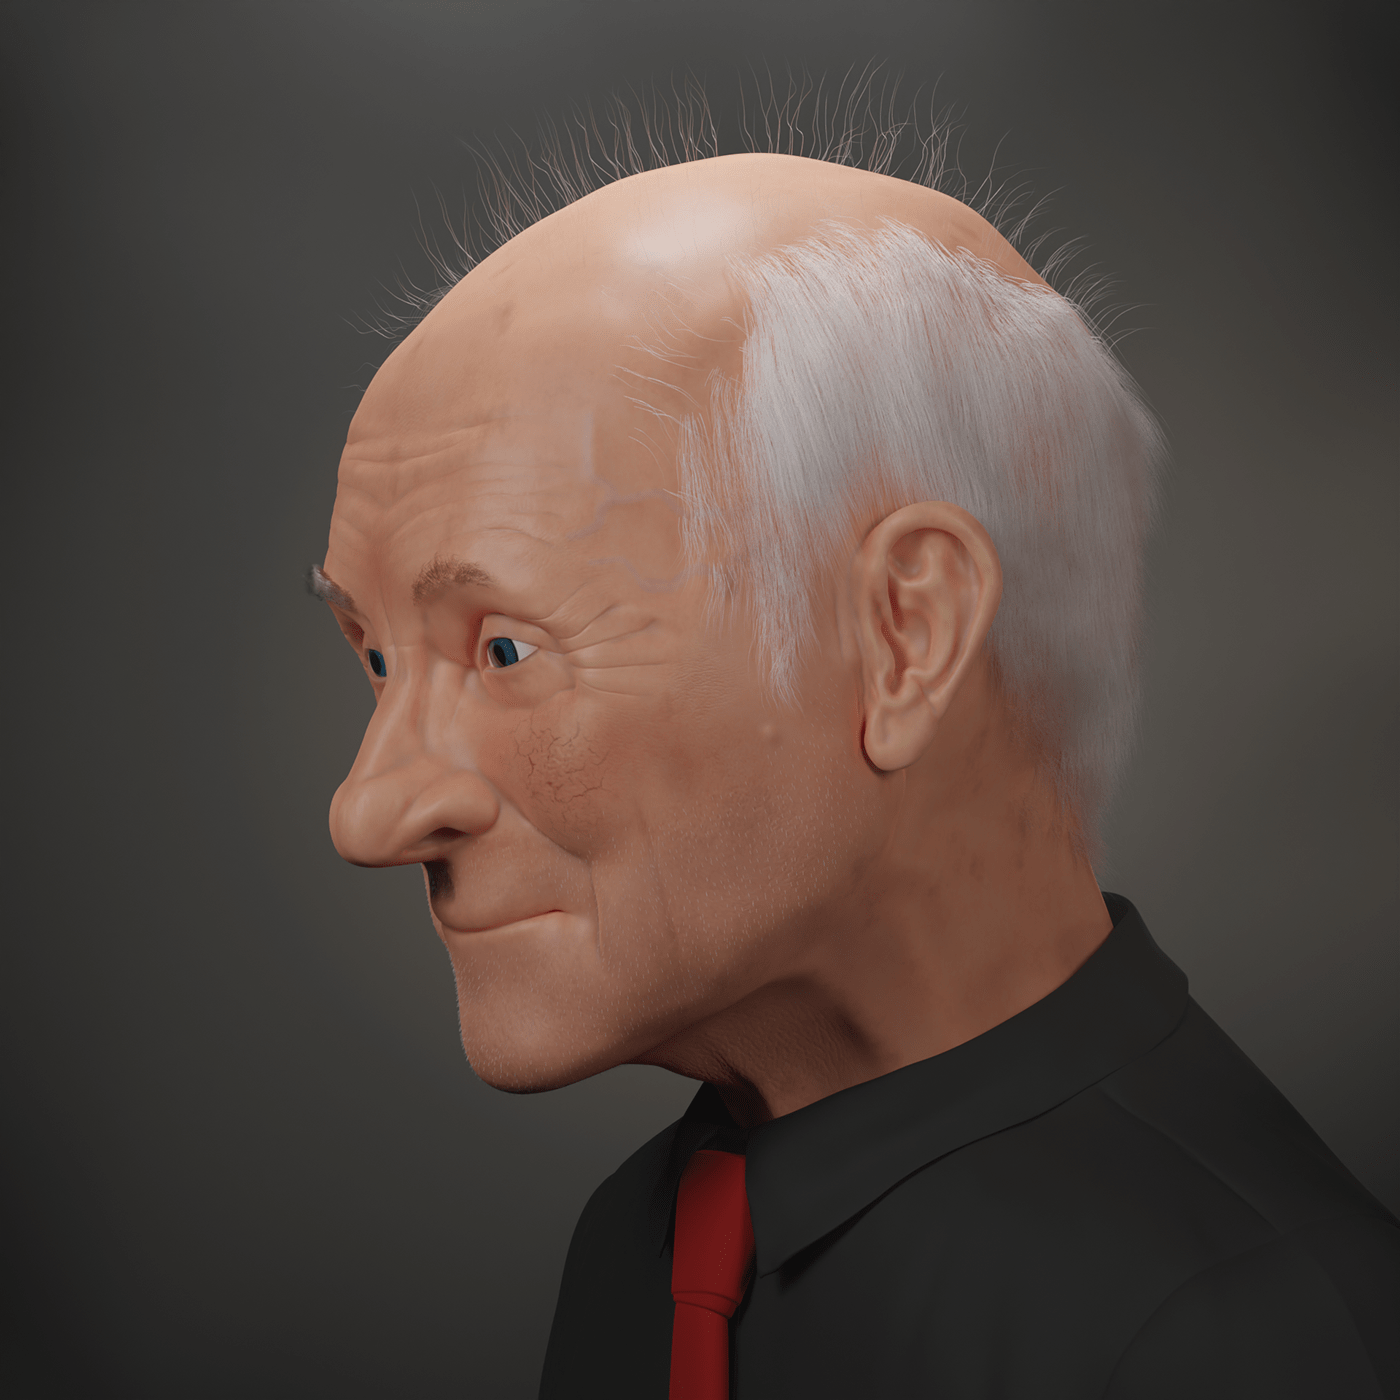 3D 3d modeling blender portrait Render